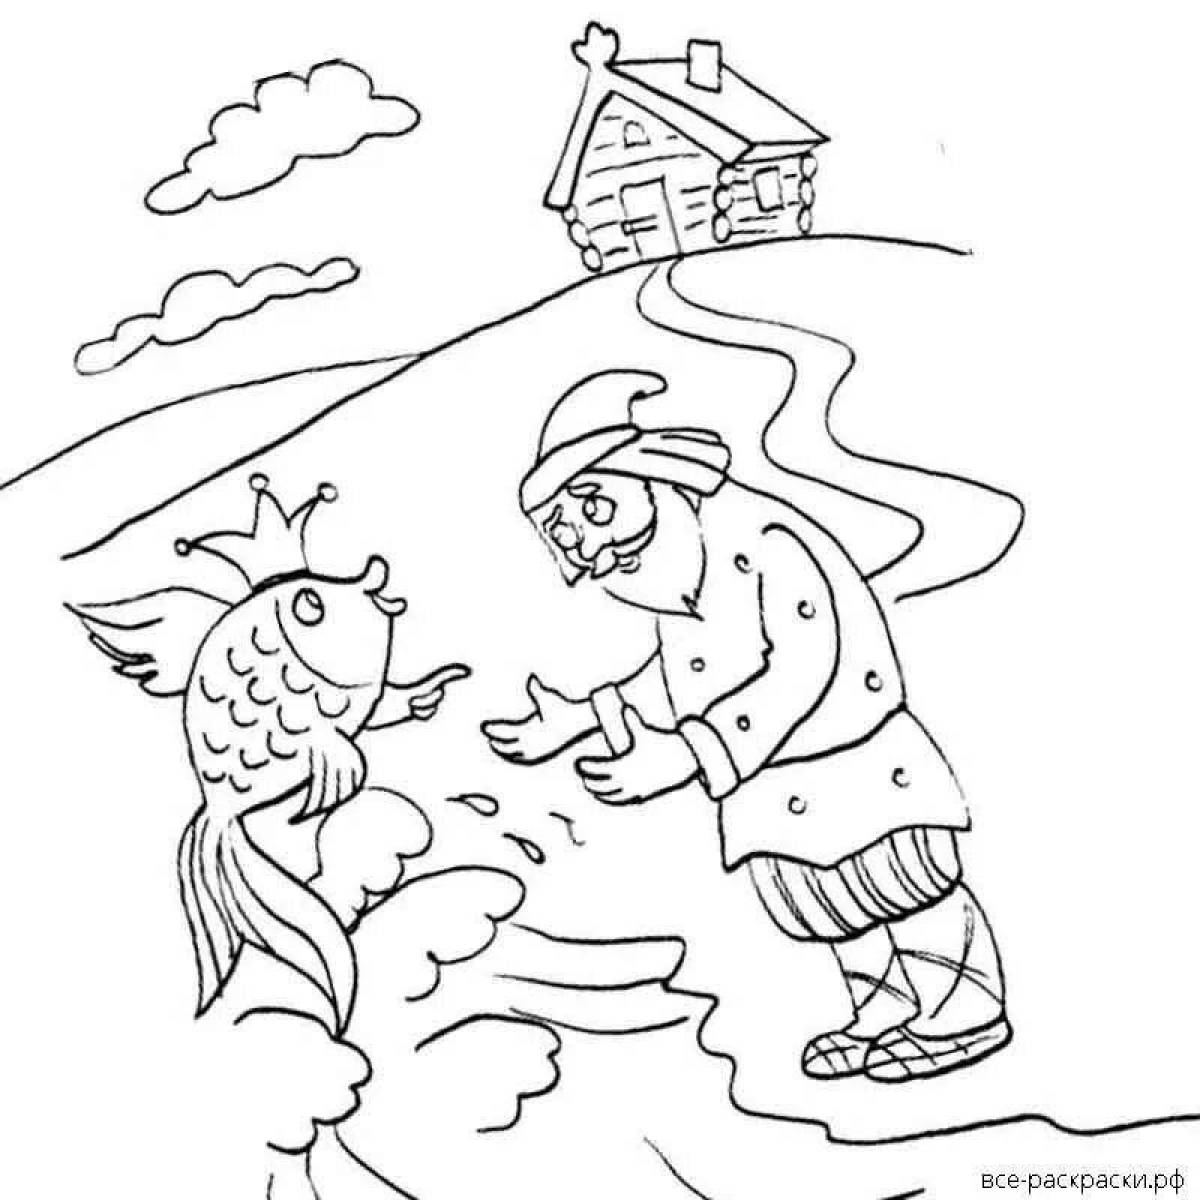 Иллюстрации к сказке о рыбаке и рыбке Золотая рыбка